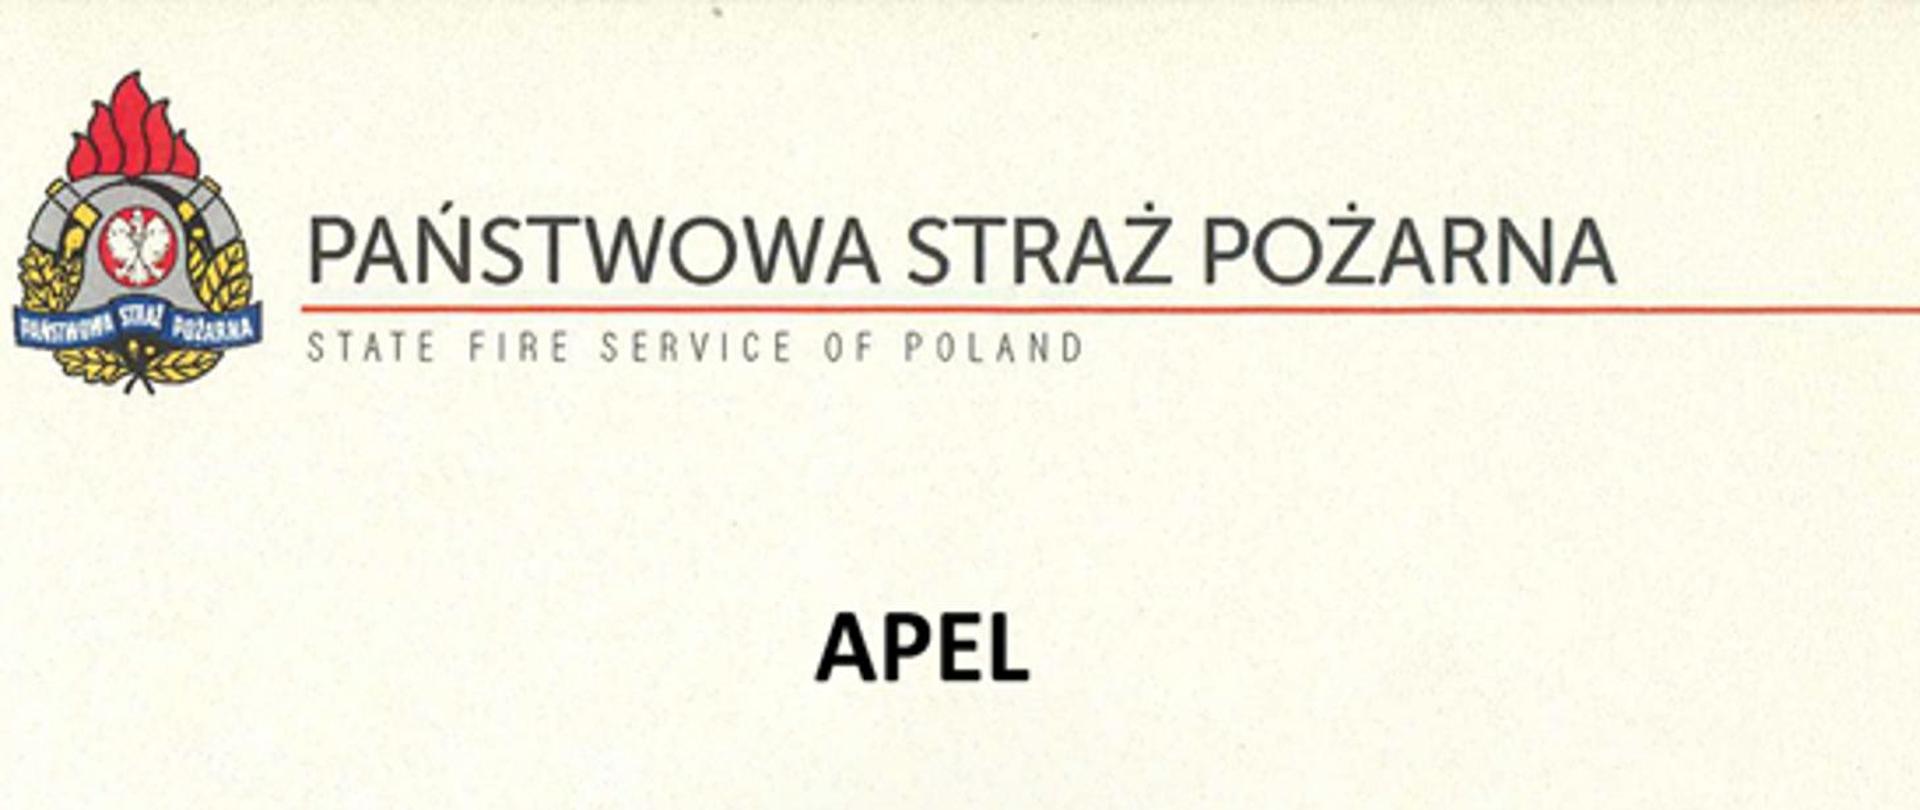 Baner Państwowej Straży Pożarnej. W dolnej części napis "APEL".